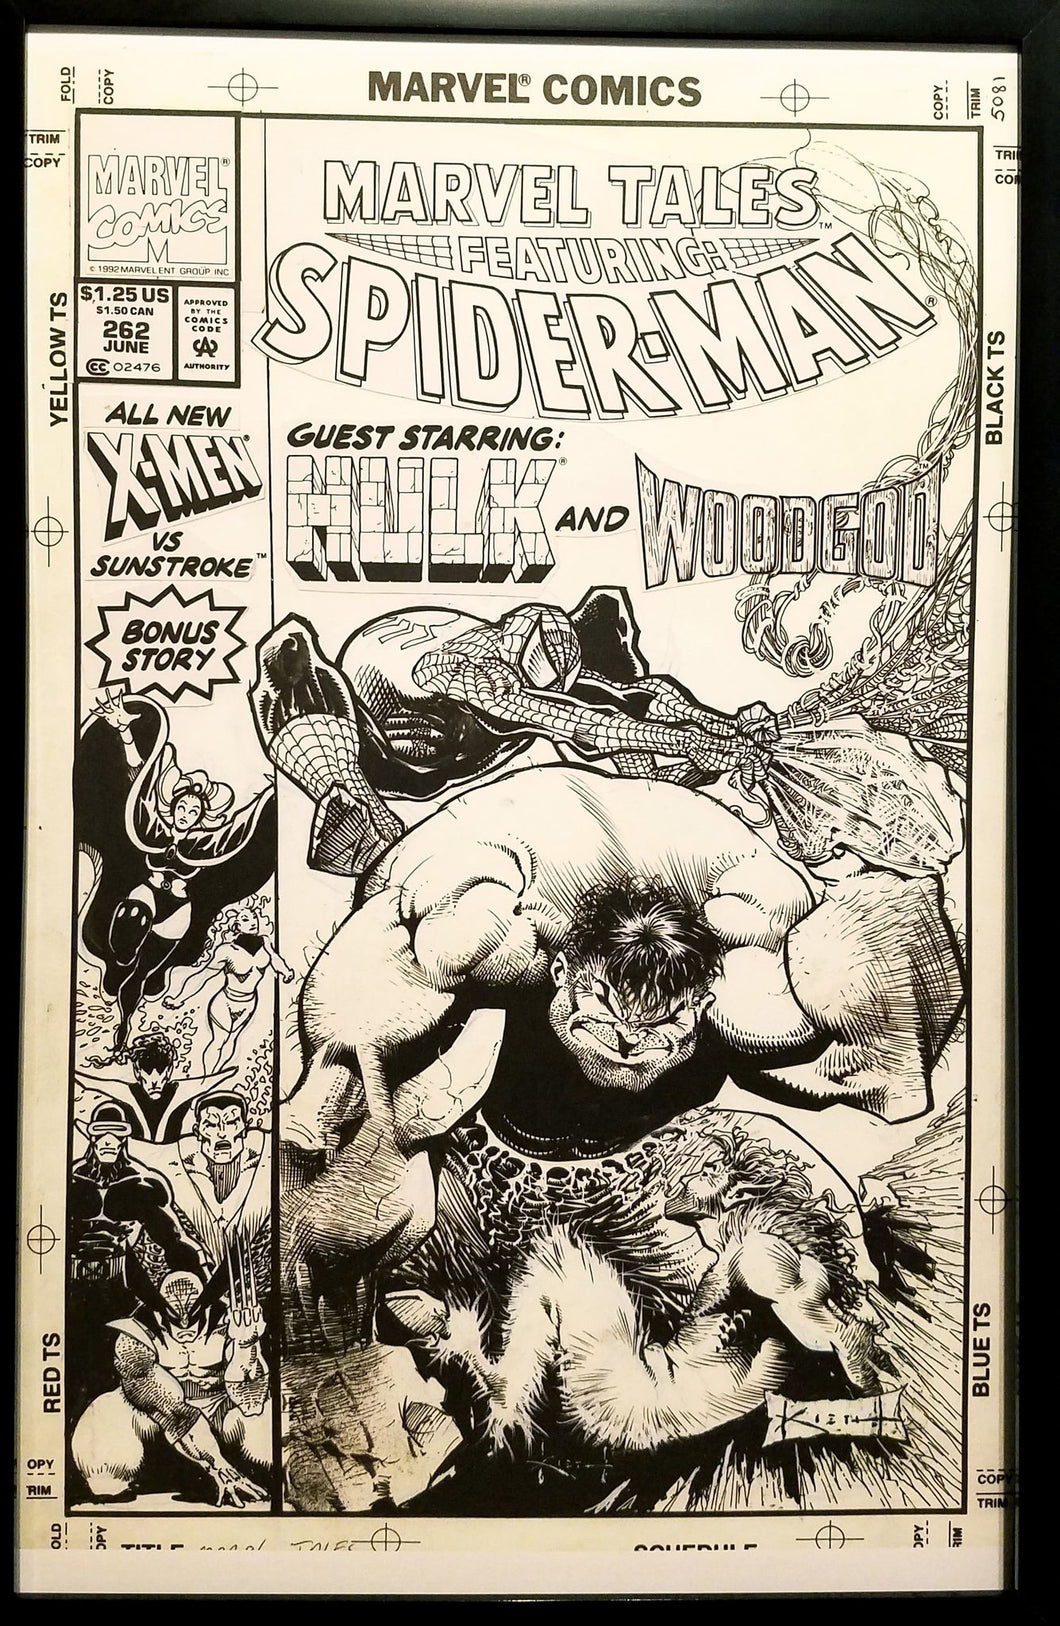 Marvel Tales Spider-Man & Hulk #262 Sam Kieth 11x17 FRAMED Original Art Poster Marvel Comics